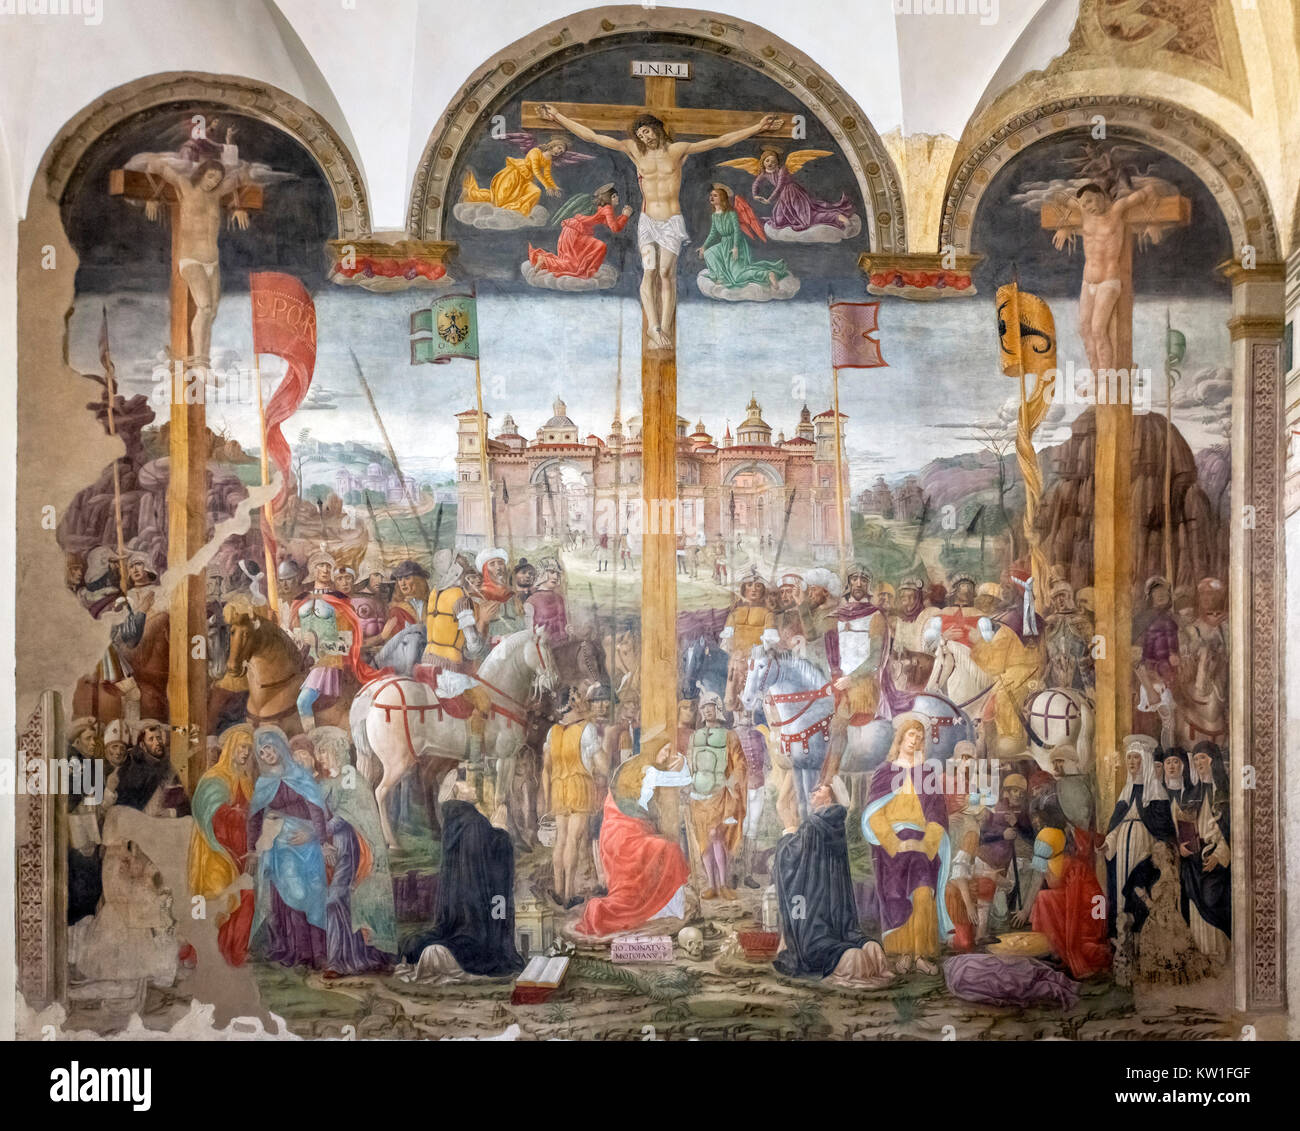 The Crucifixion by Giovanni Donato da Montorfano (c.1460-1502/03), a 1495 fresco in the refectory of the Monastery of Santa Maria delle Grazie, Milan, Italy Stock Photo